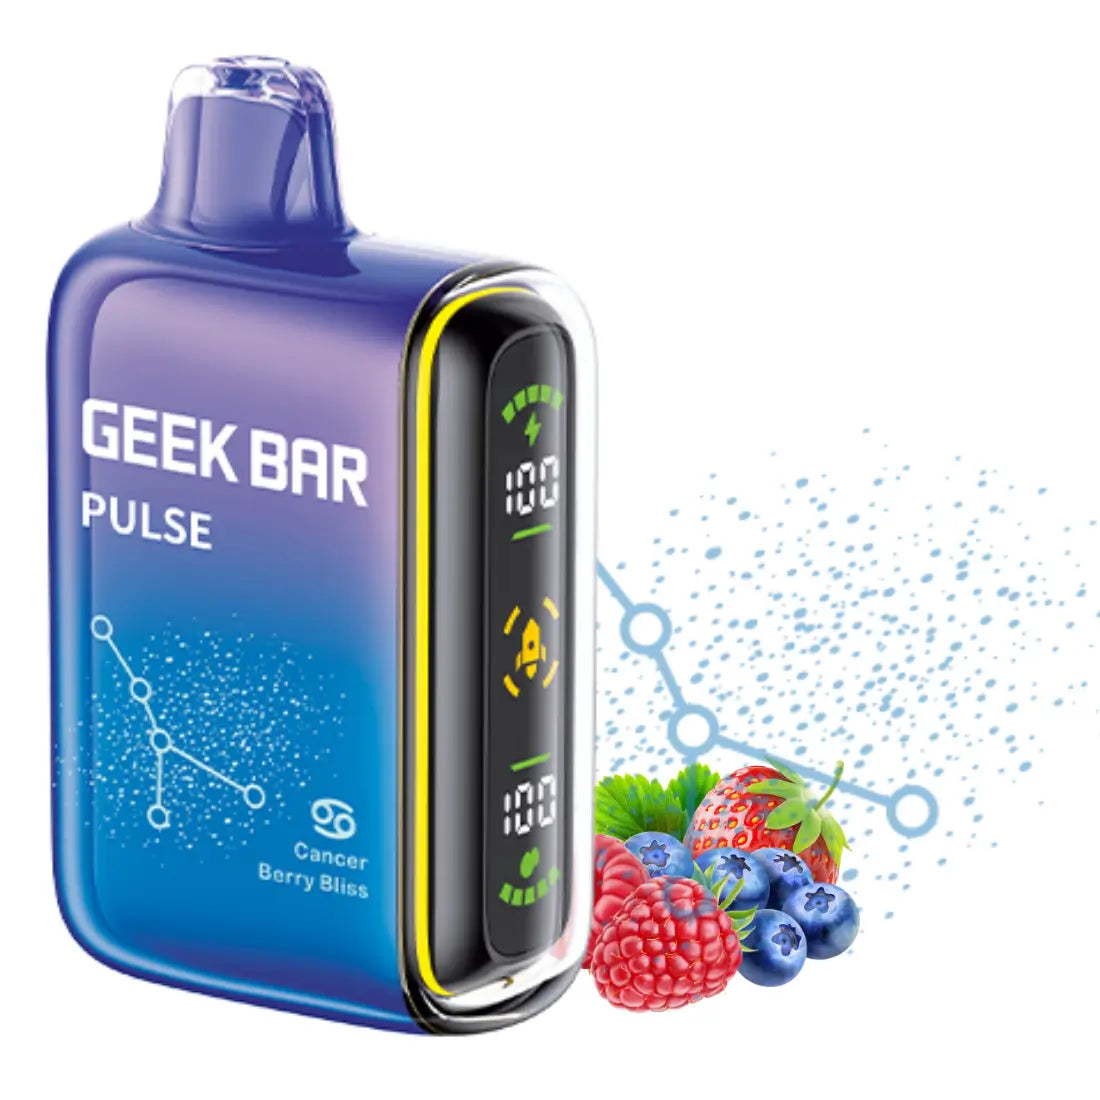 Geek Bar Pulse Berry Bliss